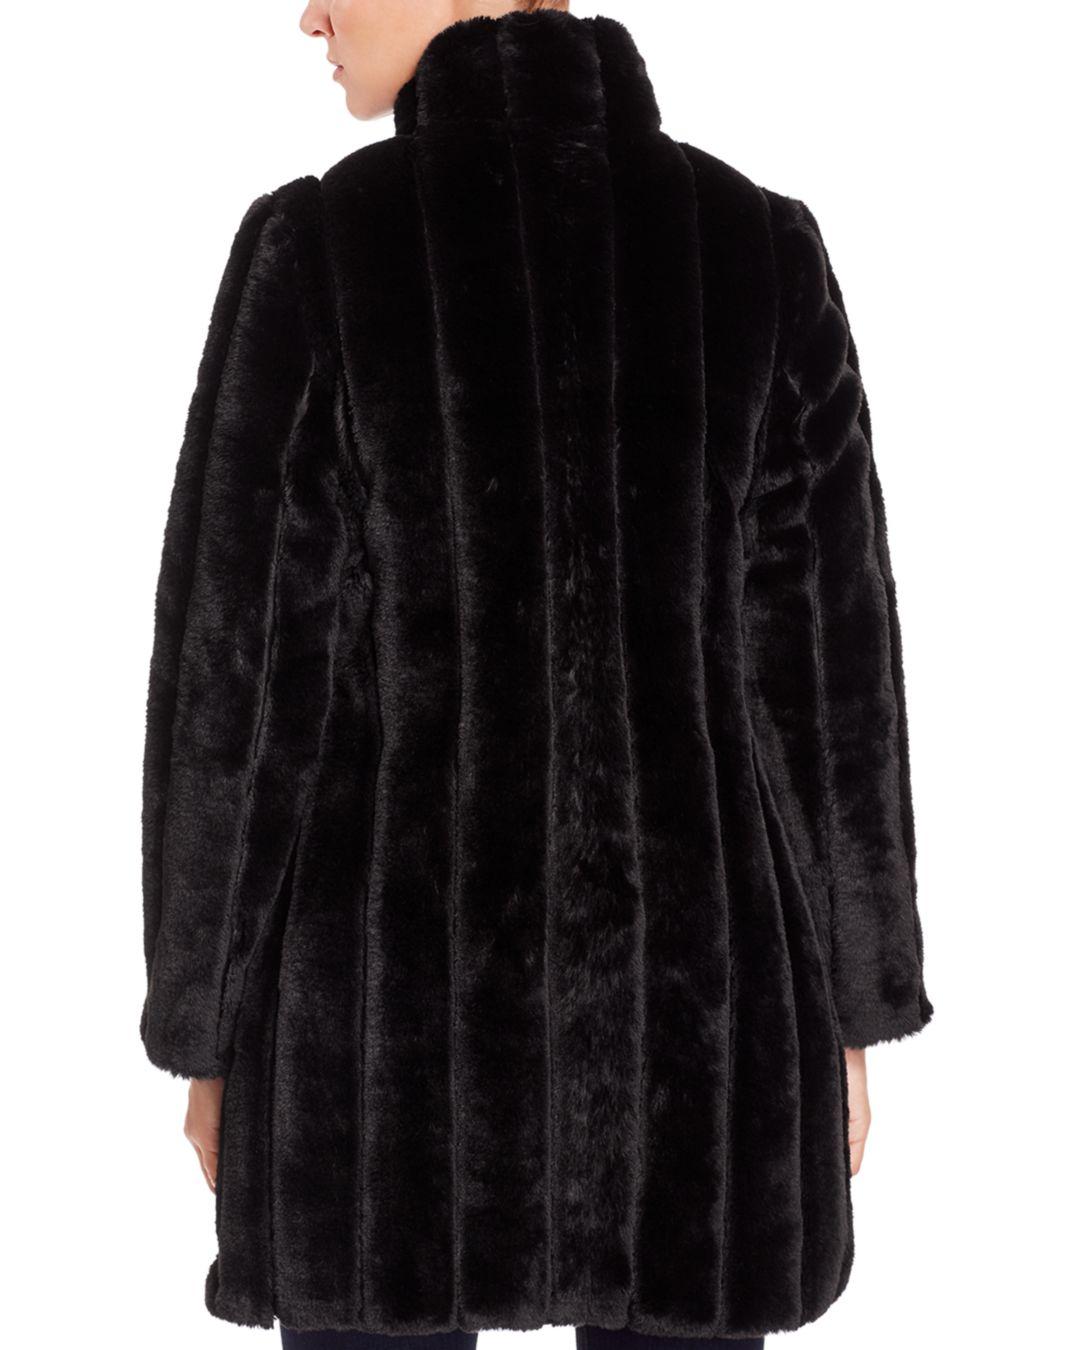 Via Spiga Reversible Vertical - Grooved Faux Fur Coat in Black - Lyst